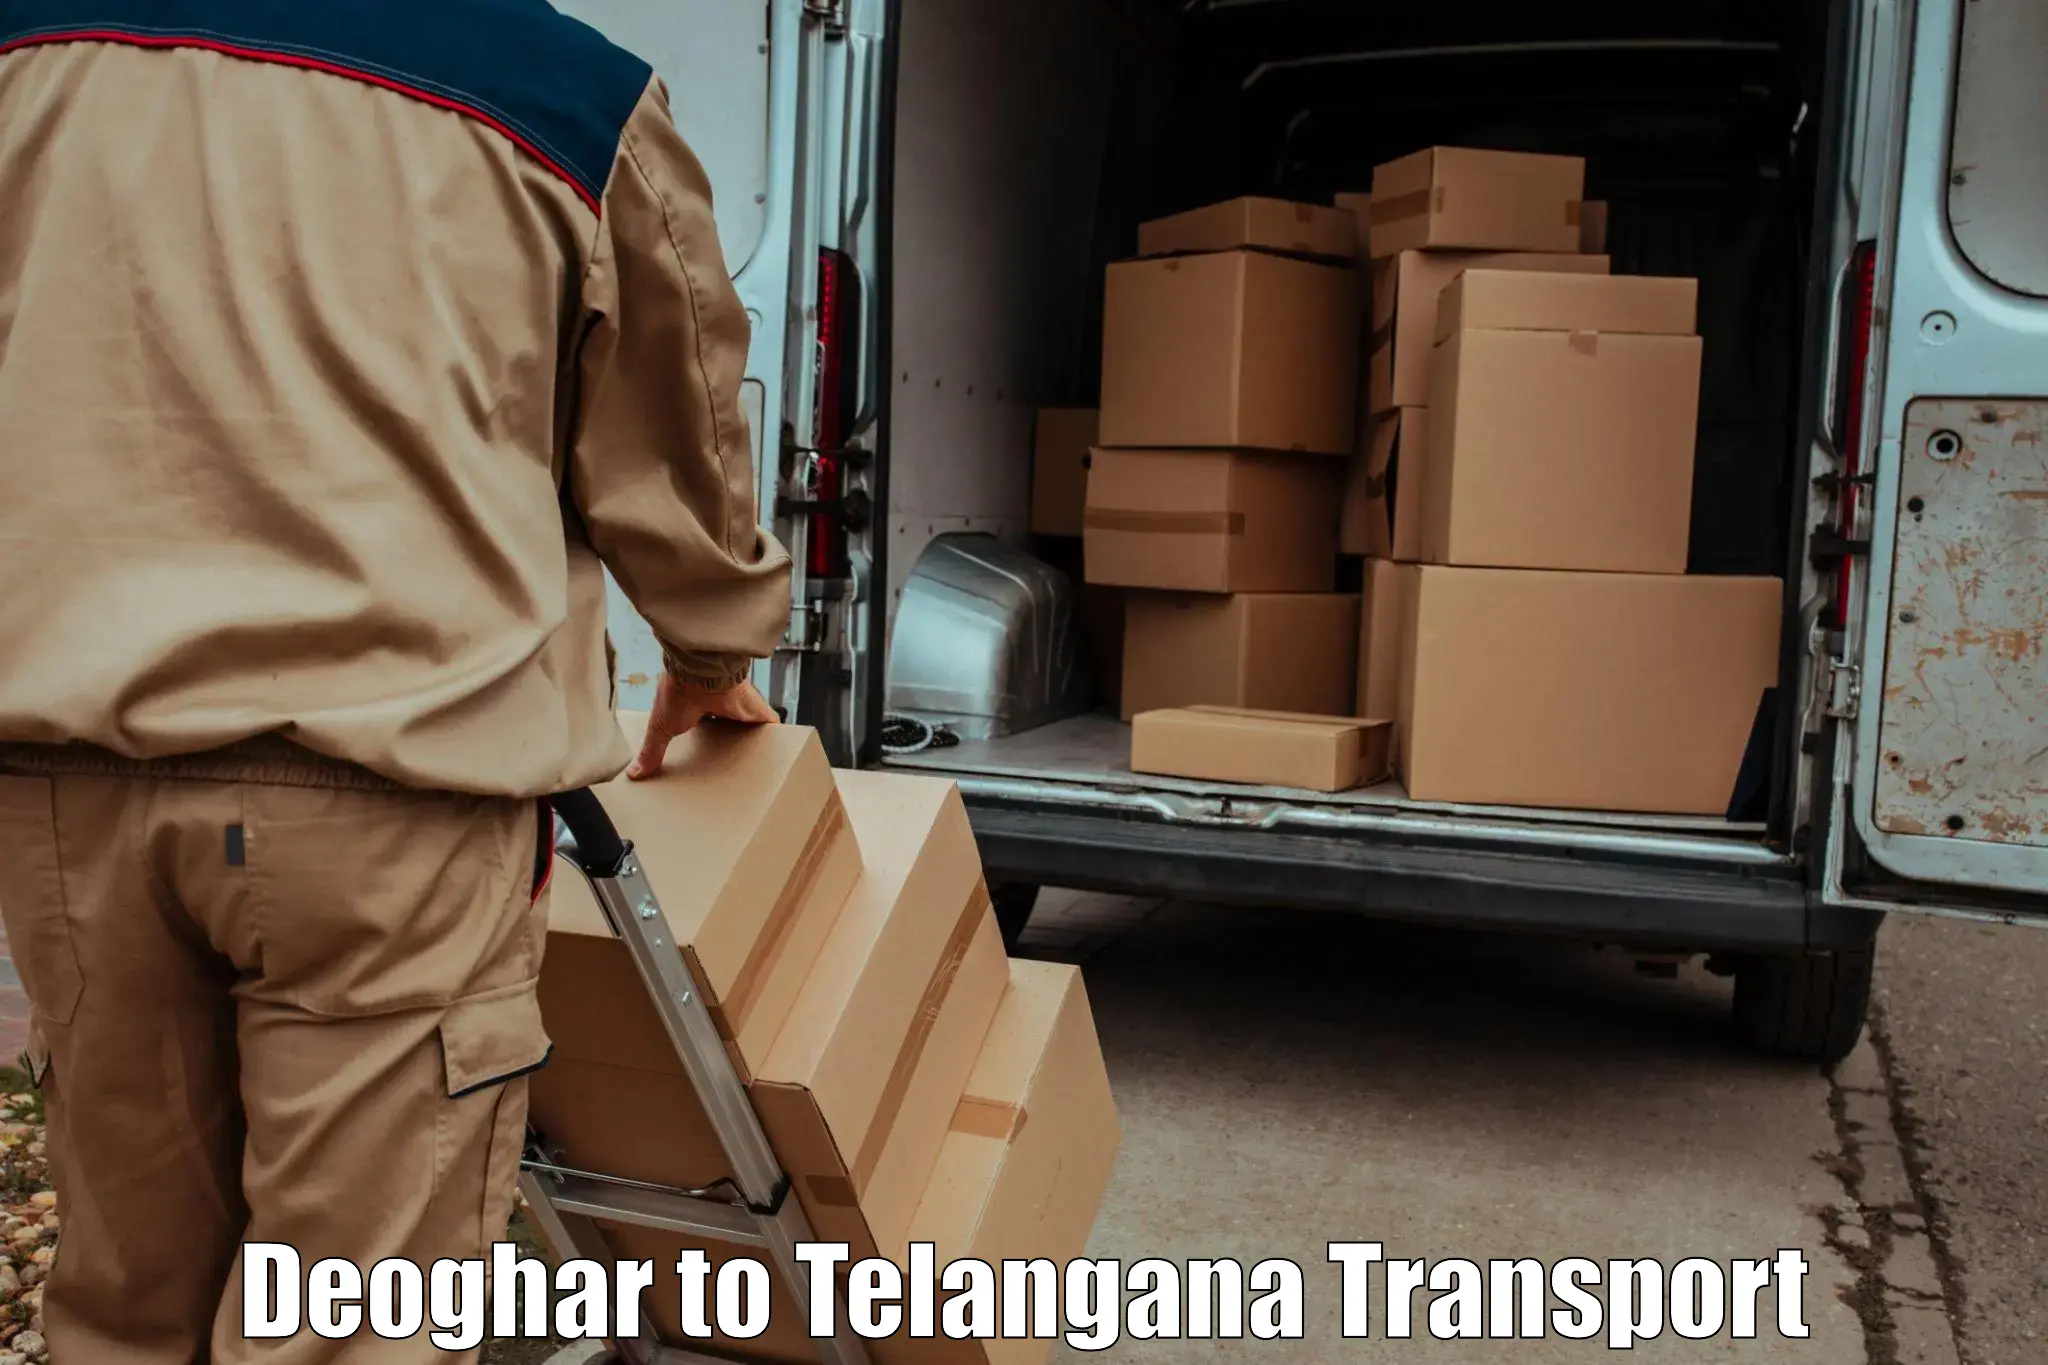 Online transport service Deoghar to Husnabad